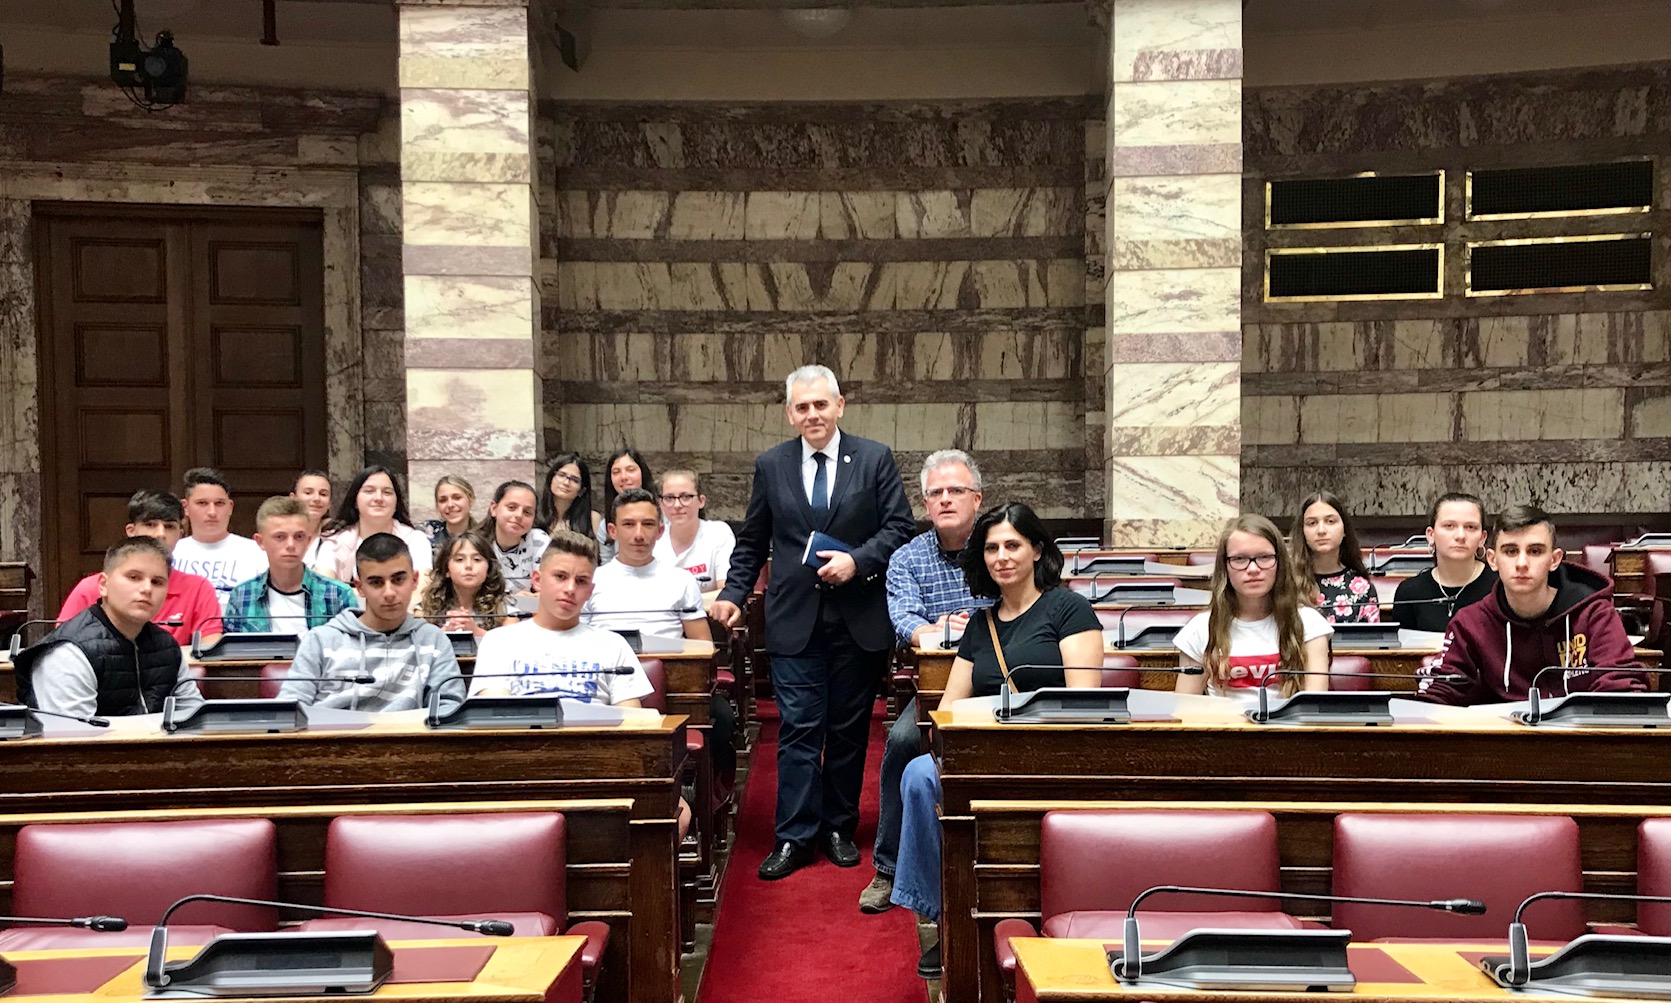 Χαρακόπουλος σε μαθητές σχολείου Γόννων: "Θεμέλιο της δημοκρατίας η ανεξαρτησία της δικαιοσύνης"